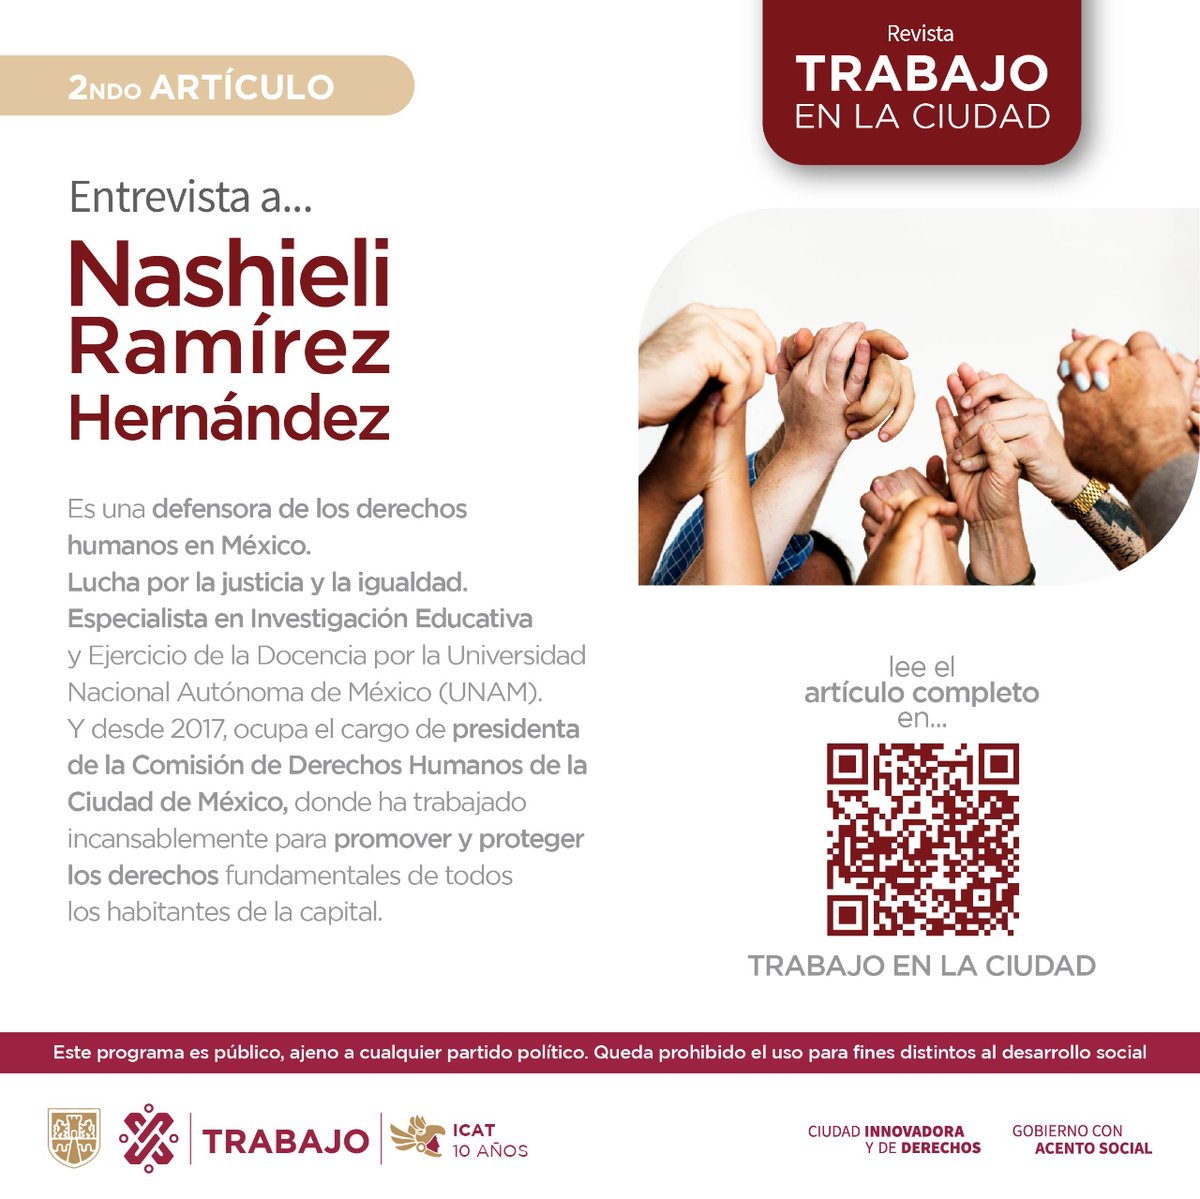 Entra a 🌐 icat.cdmx.gob.mx/revista-digital y lee la entrevista completa a Nashieli Ramírez, ella es defensora de los Derechos Humanos en México 🇲🇽✨ #TrabajoEnLaCiudad 🏢 #10AñosIcatCDMX 🫶🏼